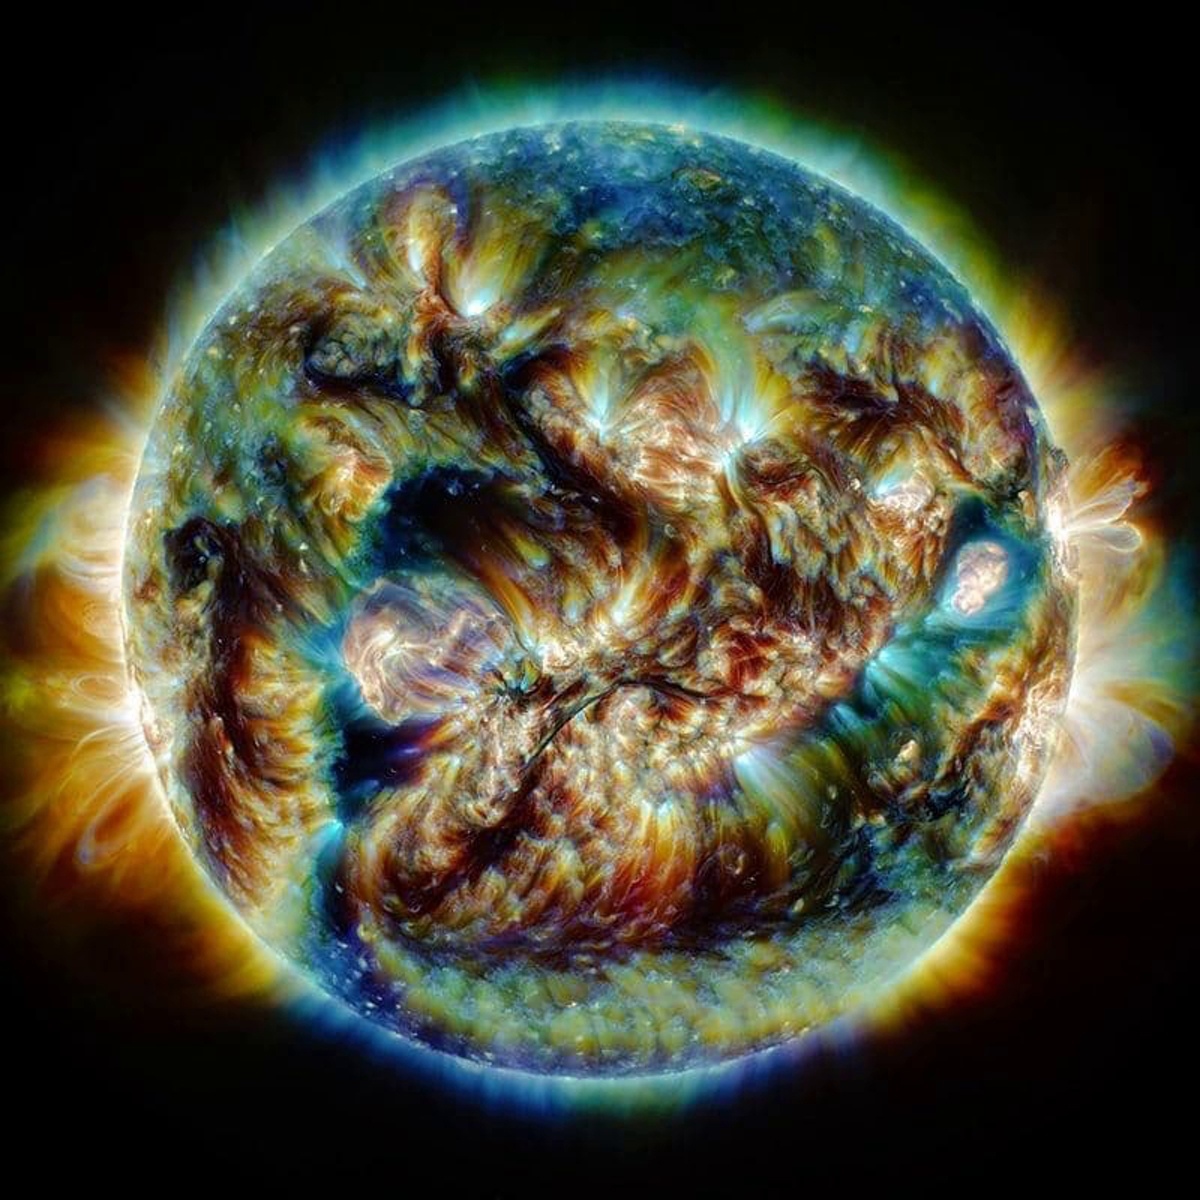 Составное изображение Солнца, полученное в Иранской обсерватории, состоящее из фотографий в различных длинах волн света.